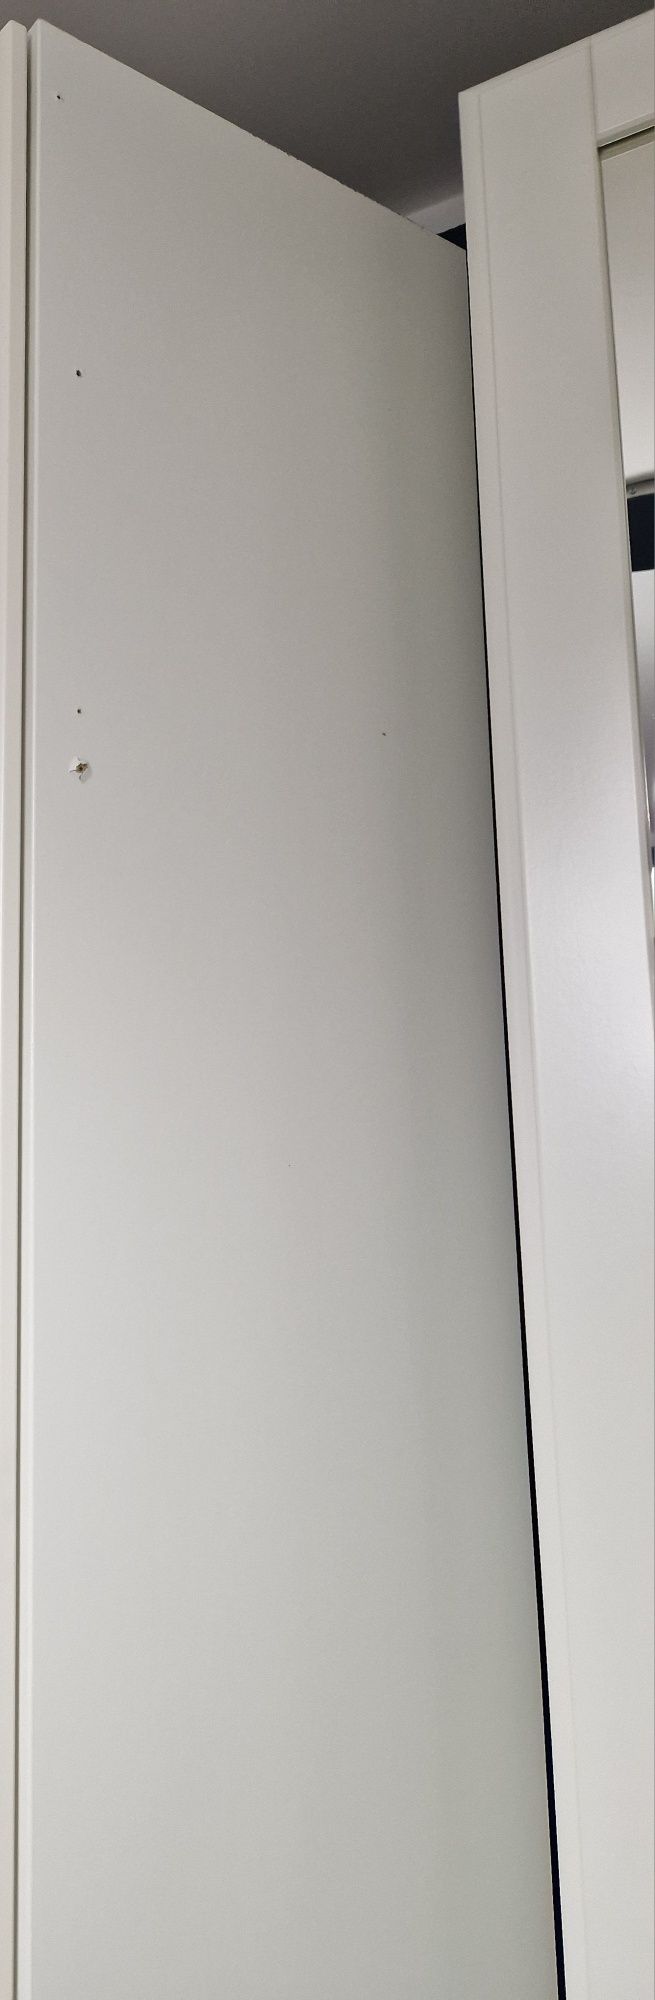 Szafa PAX 50x35x236 + drzwi lustrzane białe TYSSEDAL marki Ikea